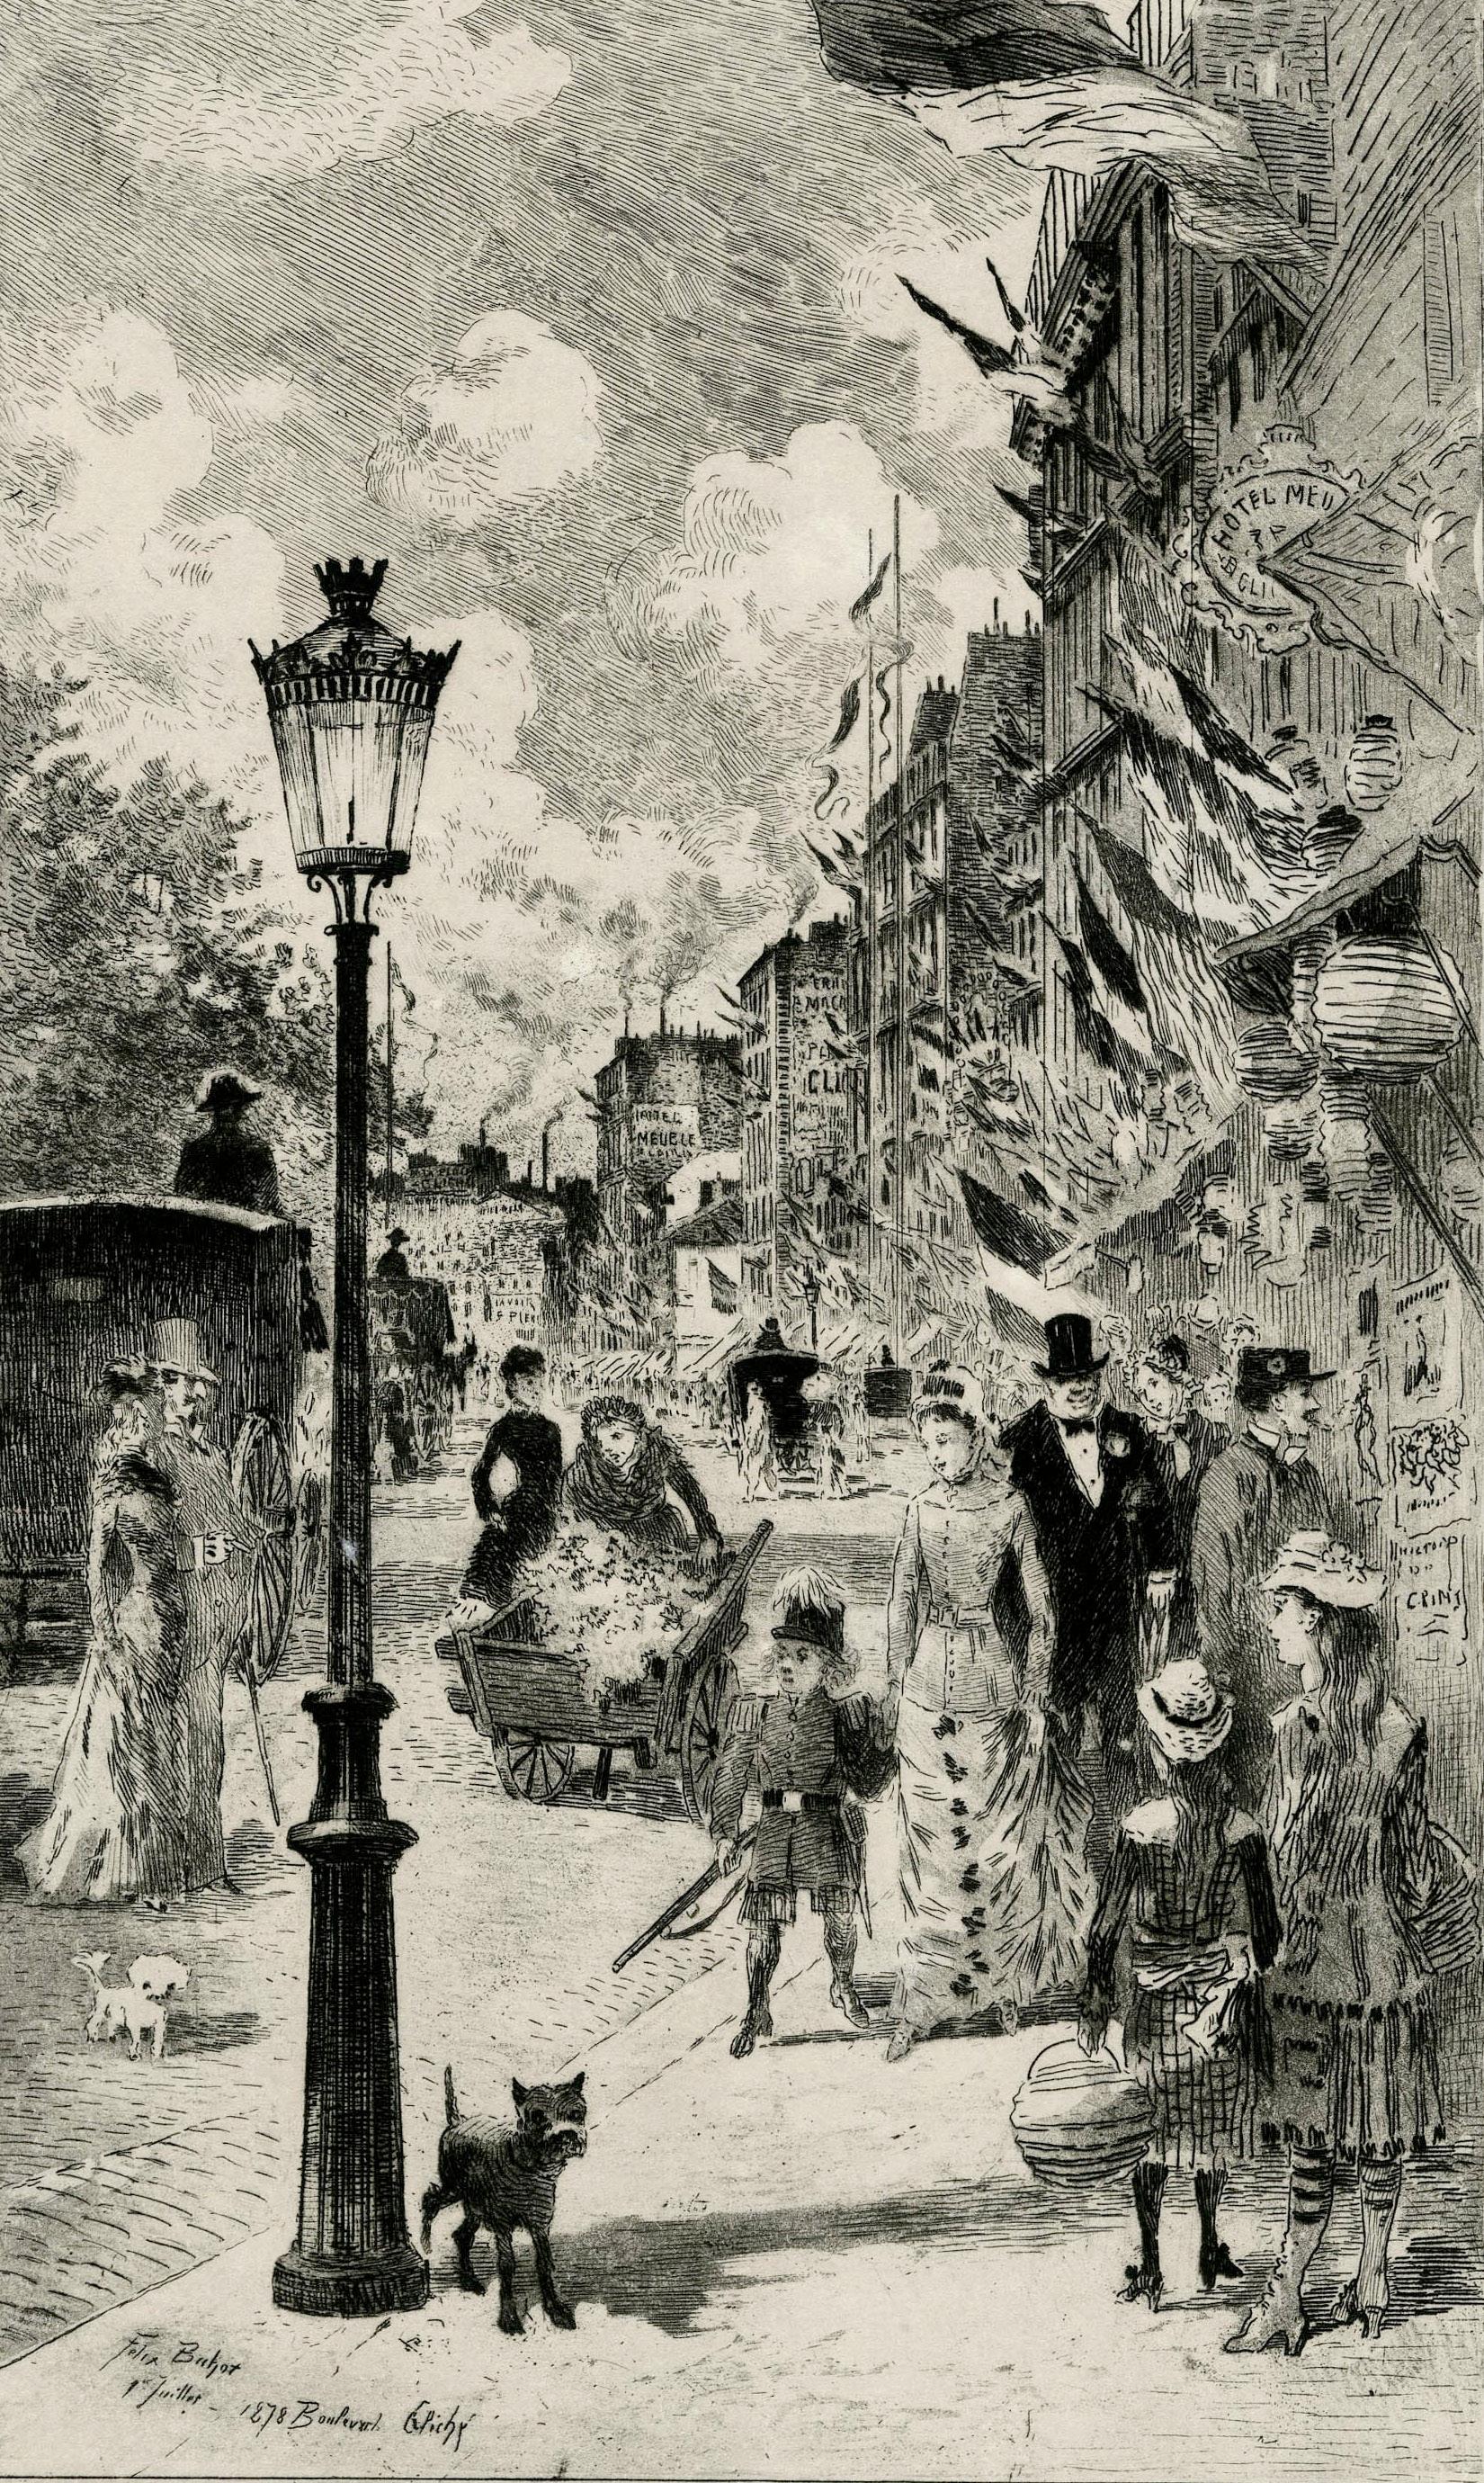 La Fête Nationale du Boulevard Clichy - Print by Félix Hilaire Buhot